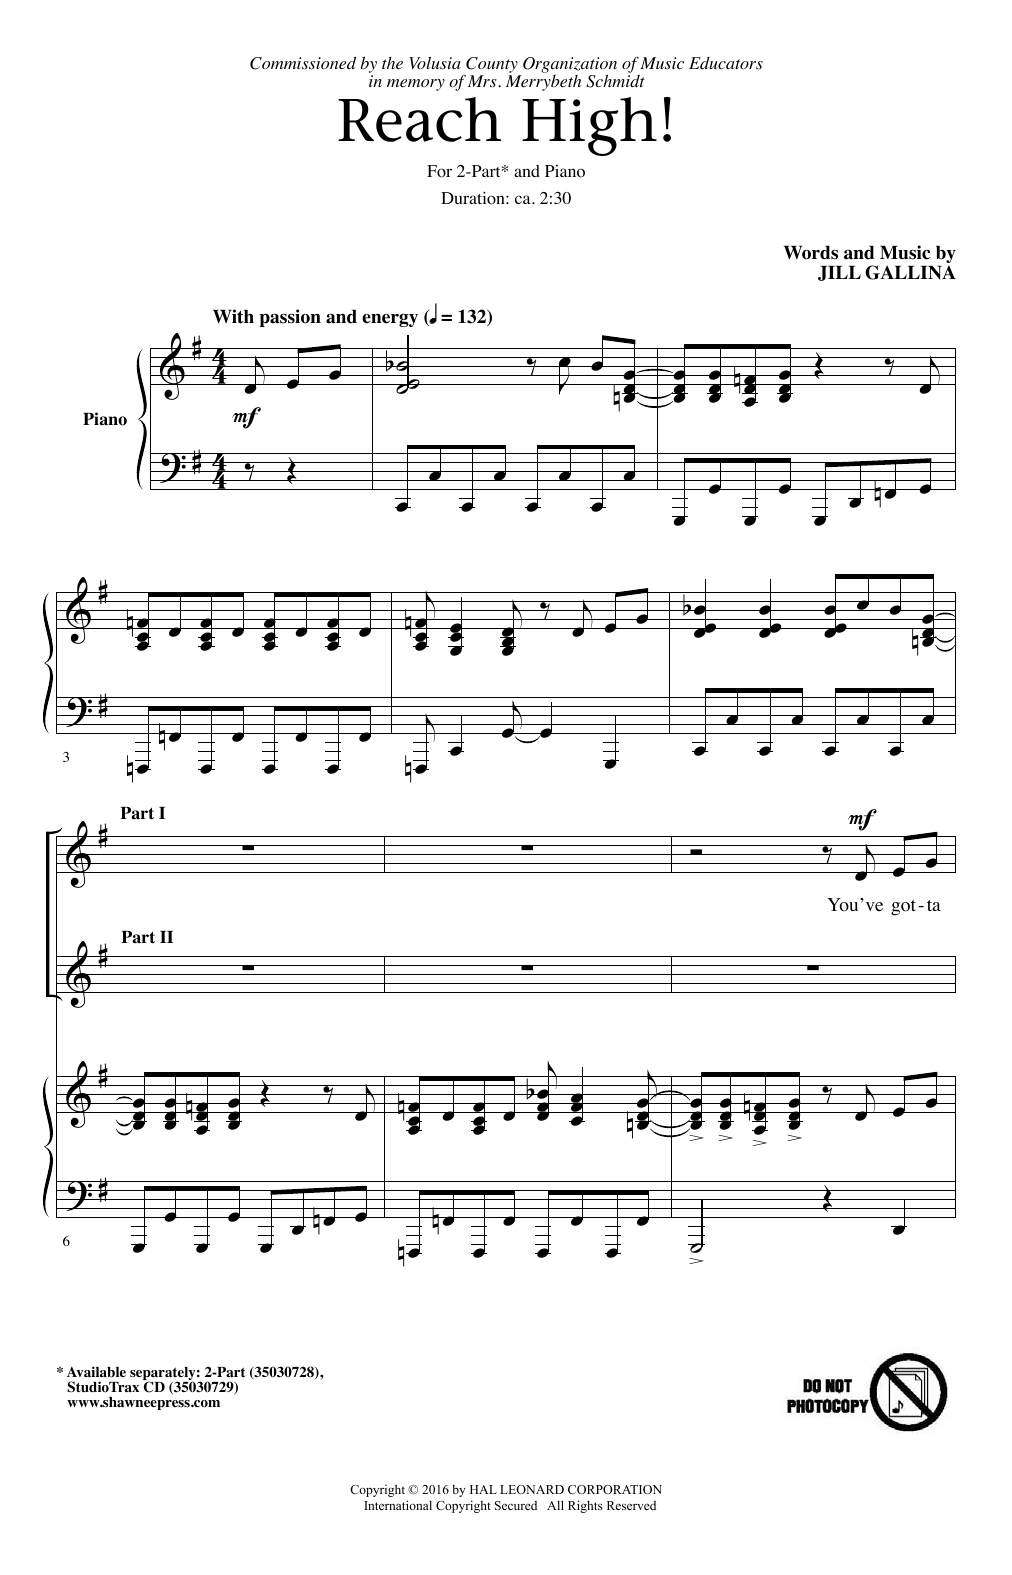 Jill Gallina Reach High! sheet music notes and chords arranged for 2-Part Choir